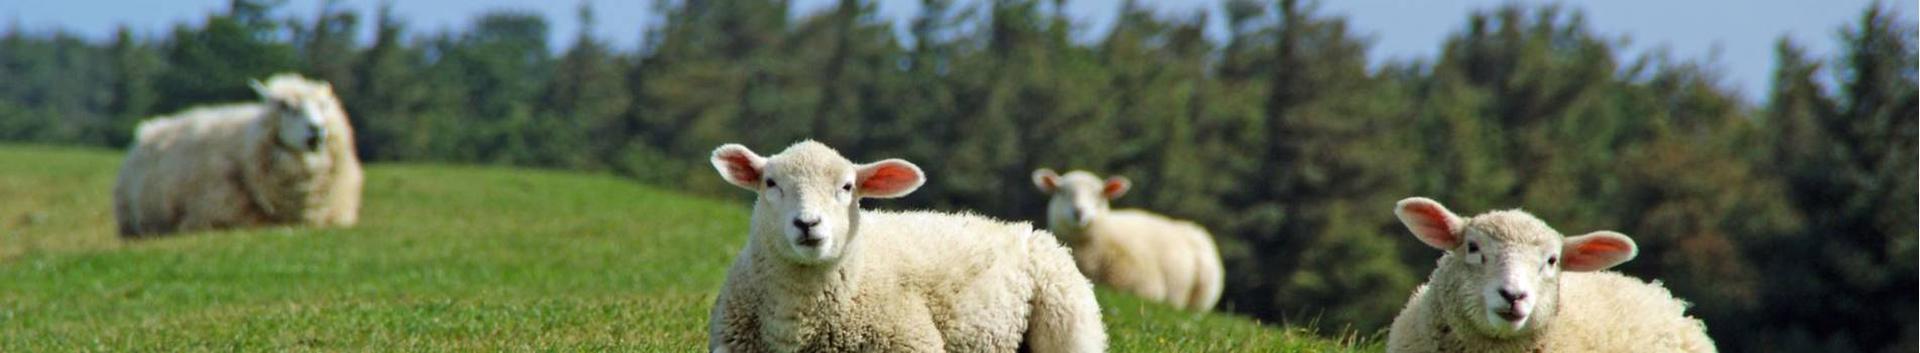 OÜ Niinepuu põhitegevusalaks on lambakasvatus, vähesel määral tegeletakse ka küülikukasvatusega (angooora küülikud) ning kasvatatakse maastikuhoolduse ...